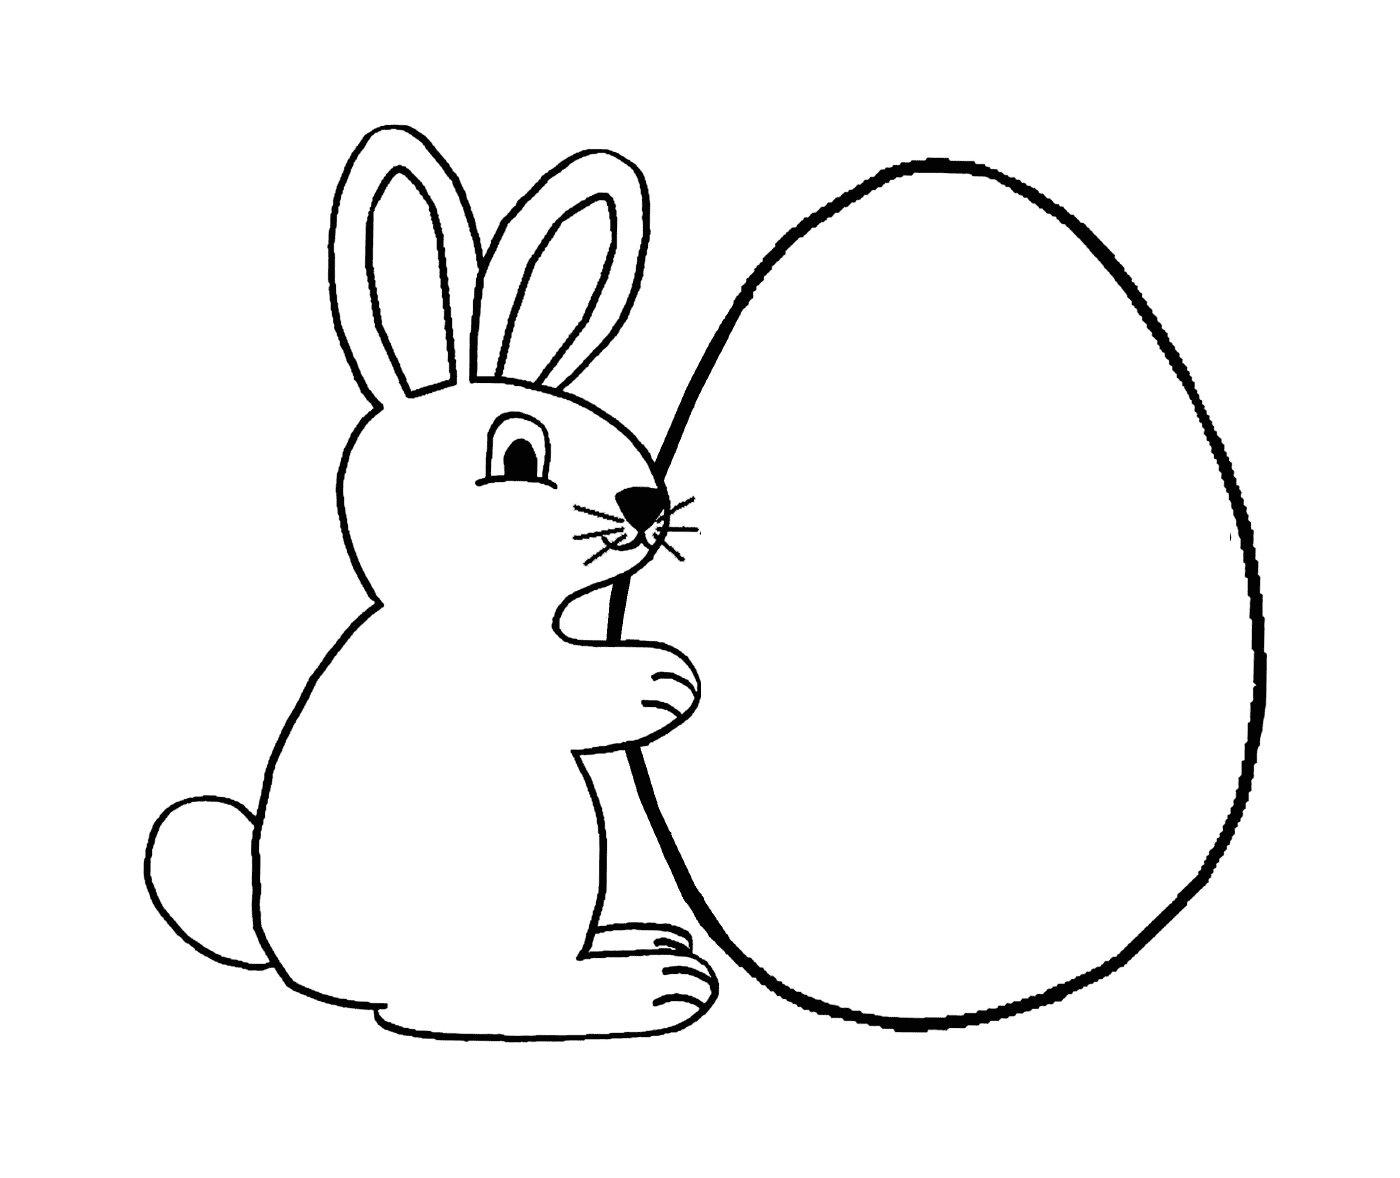  الأرنب القريب من بيضة 